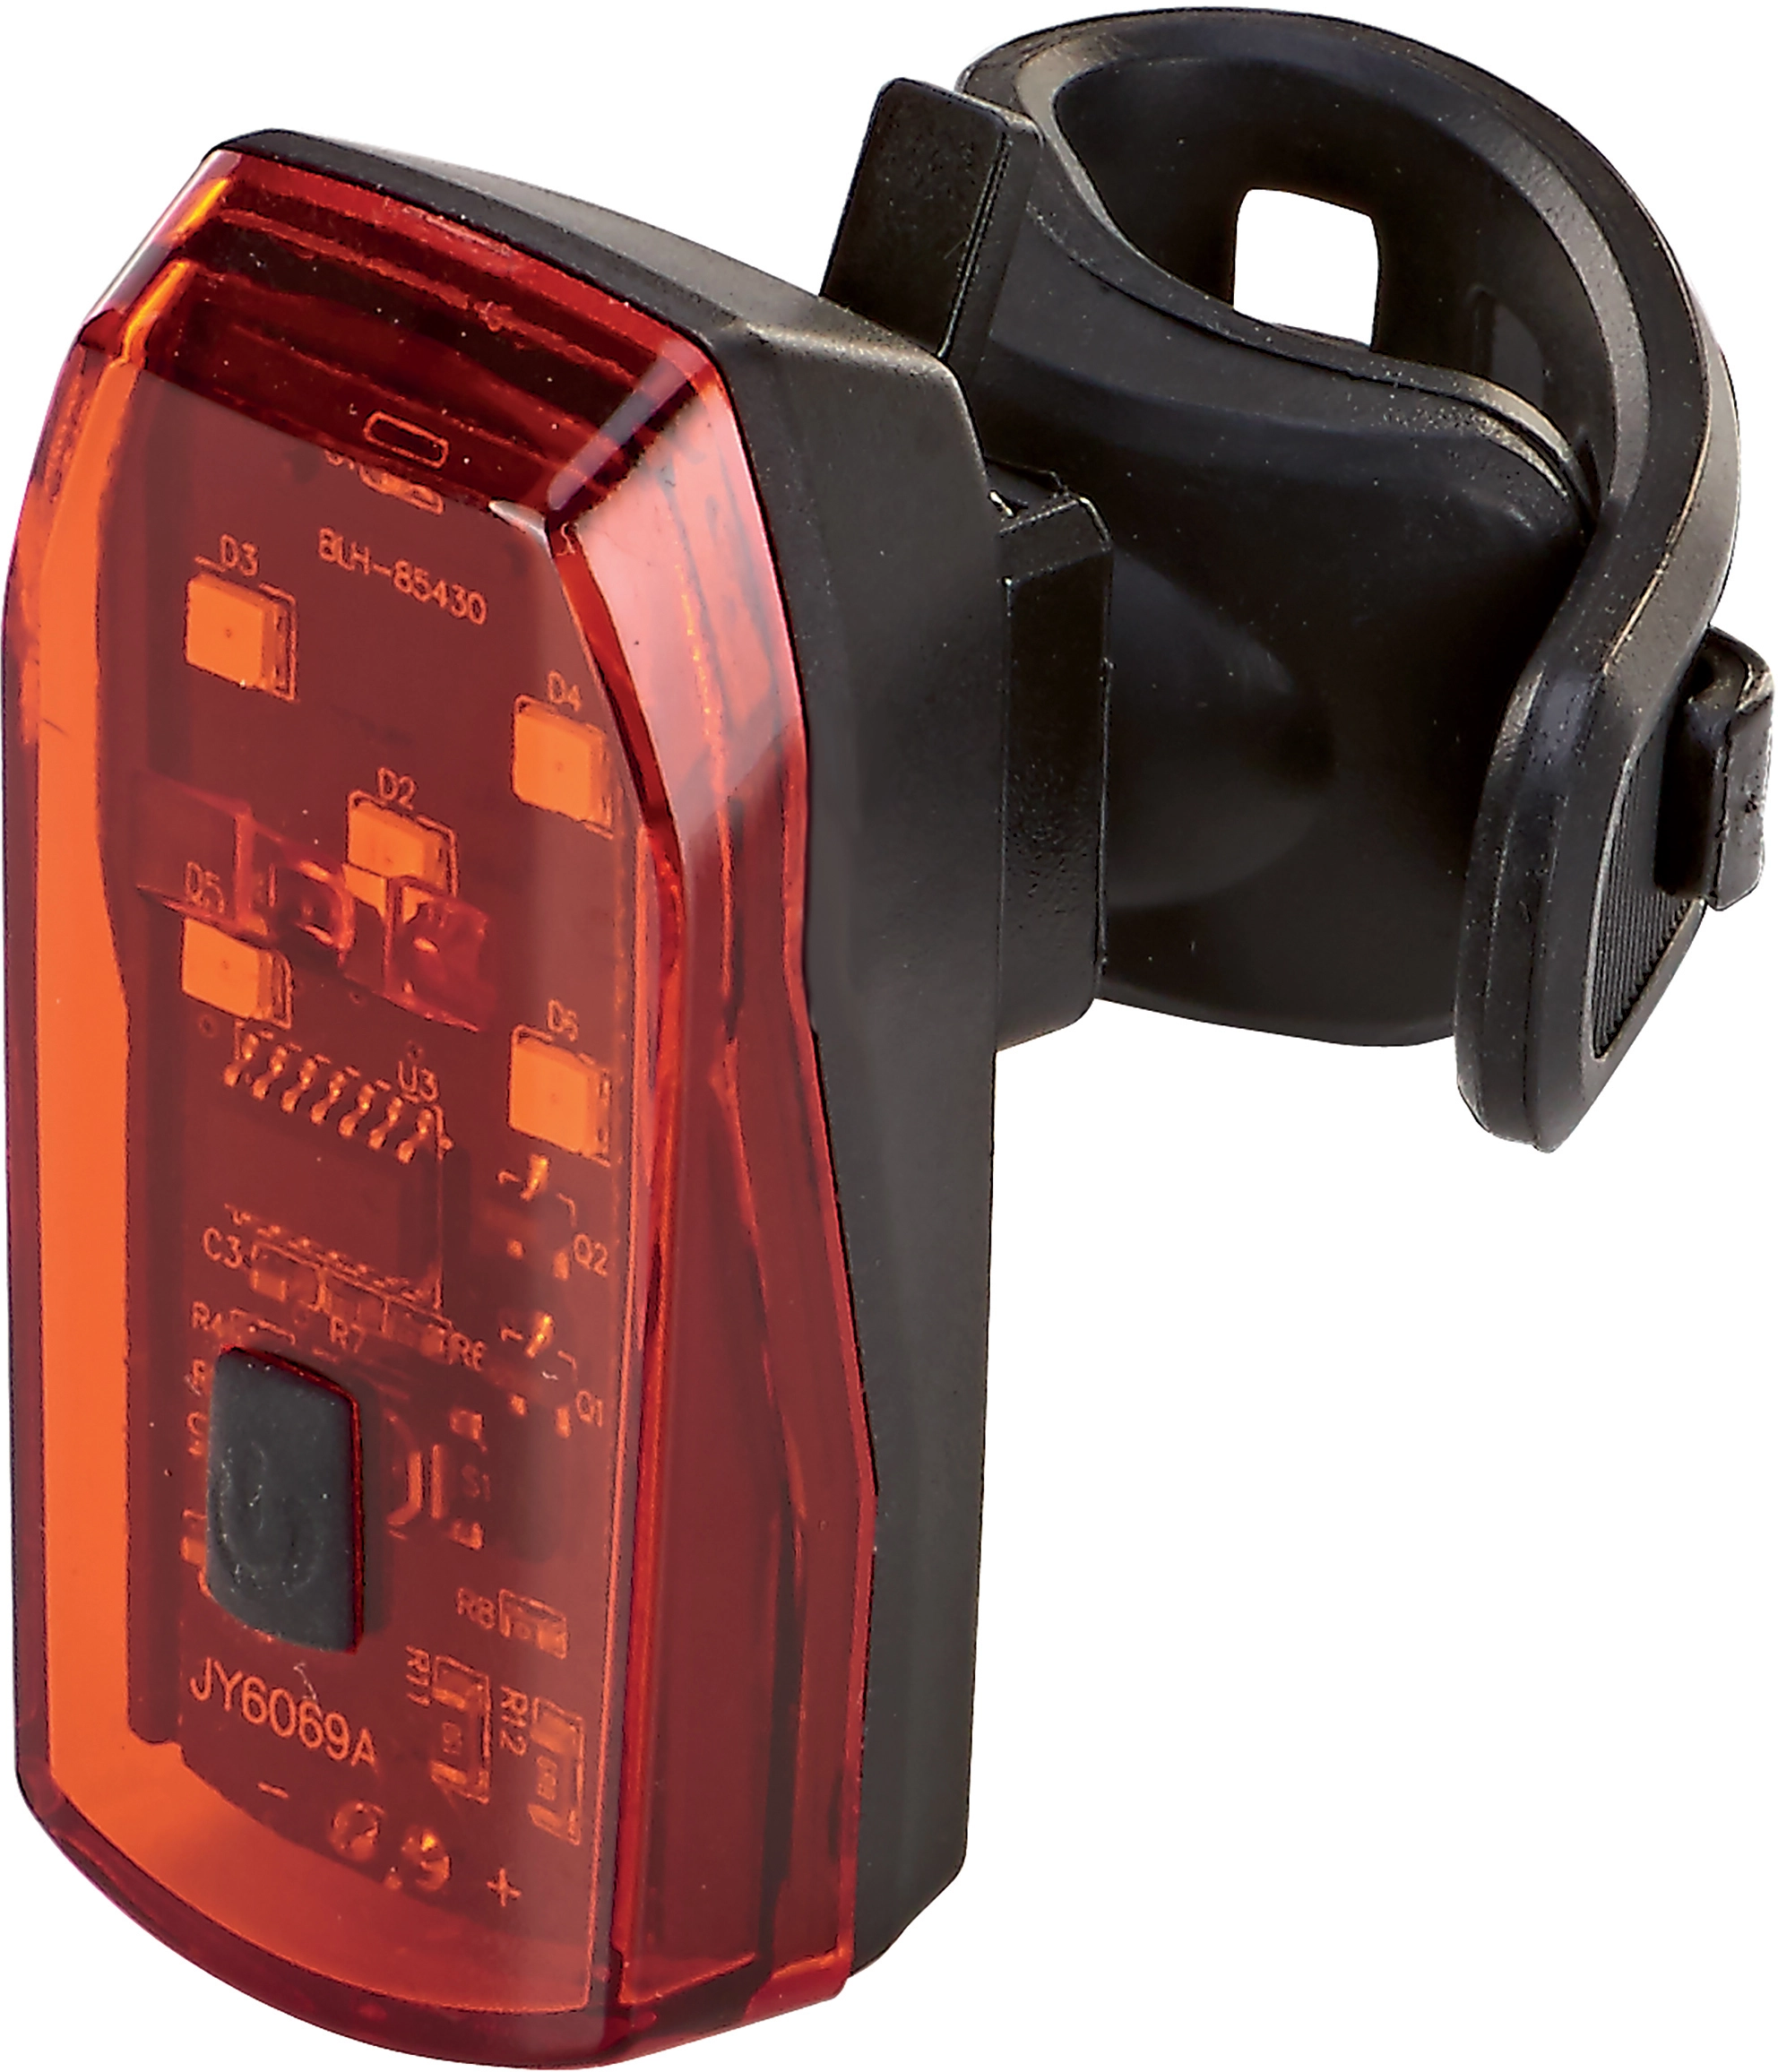 Prophete 5693 LED Rücklicht mit Bremslichtfunktion für E-Bike (6-48V),  22,99 €